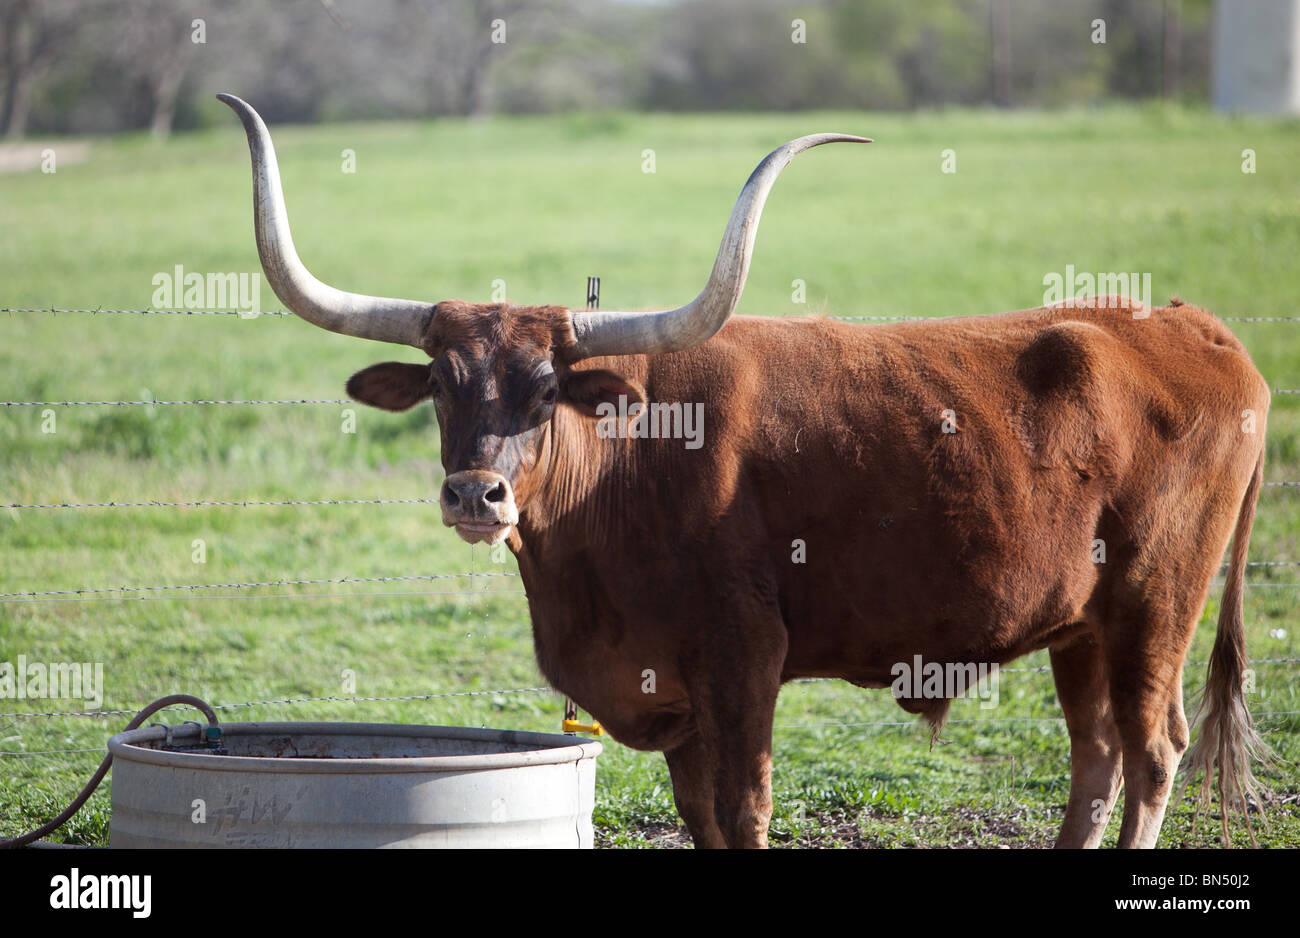 A Texas Longhorn Steer on a Ranch near Austin, Texas Stock Photo